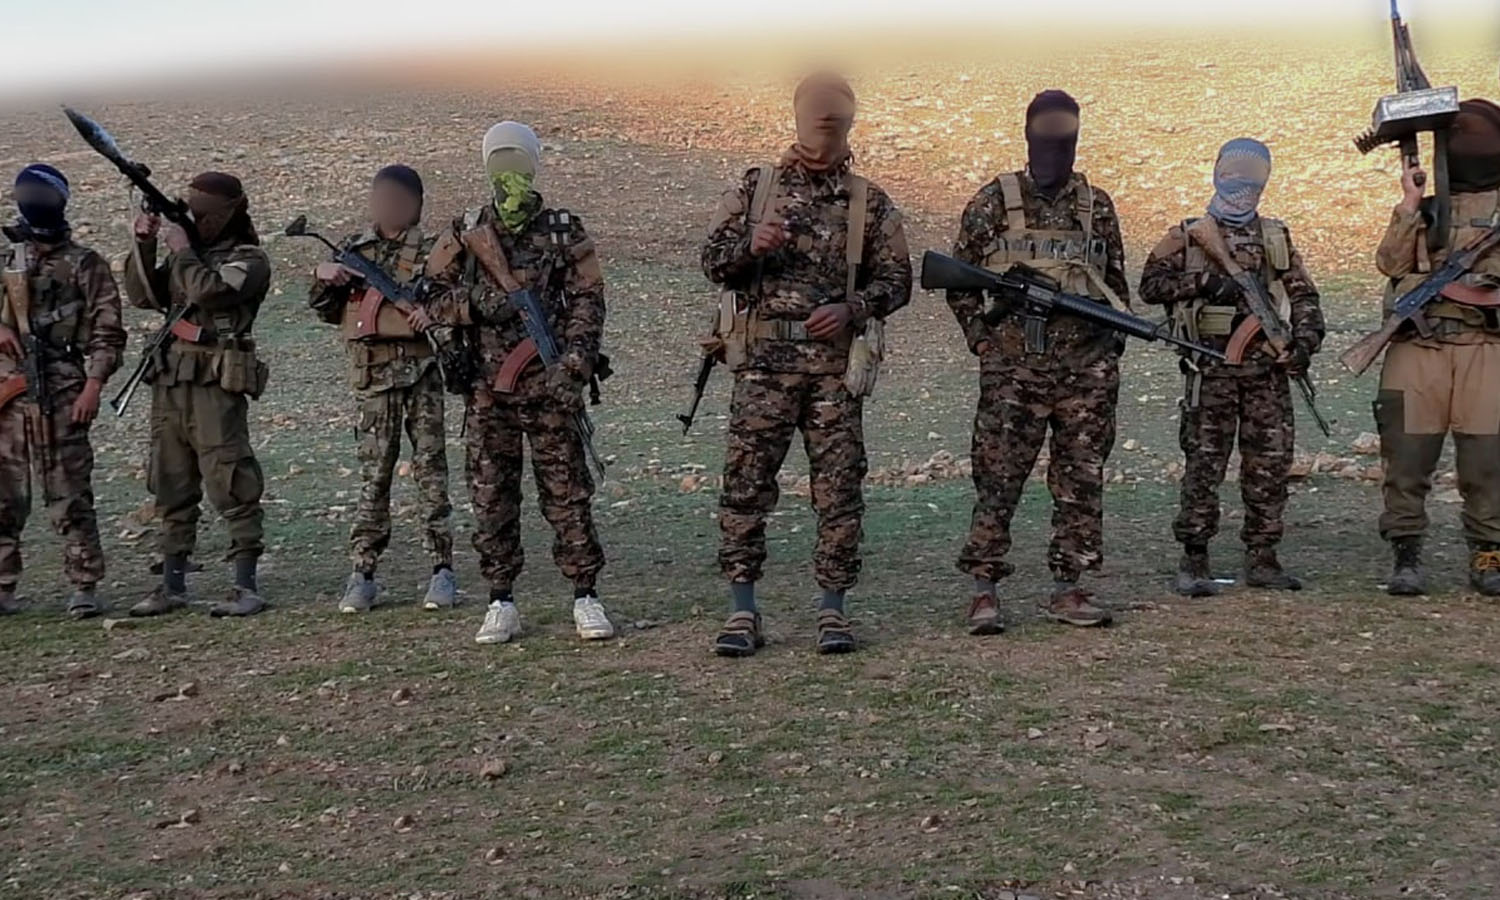 مقاتلون من تنظيم "الدولة الإسلامية" في سوريا (أعماق)